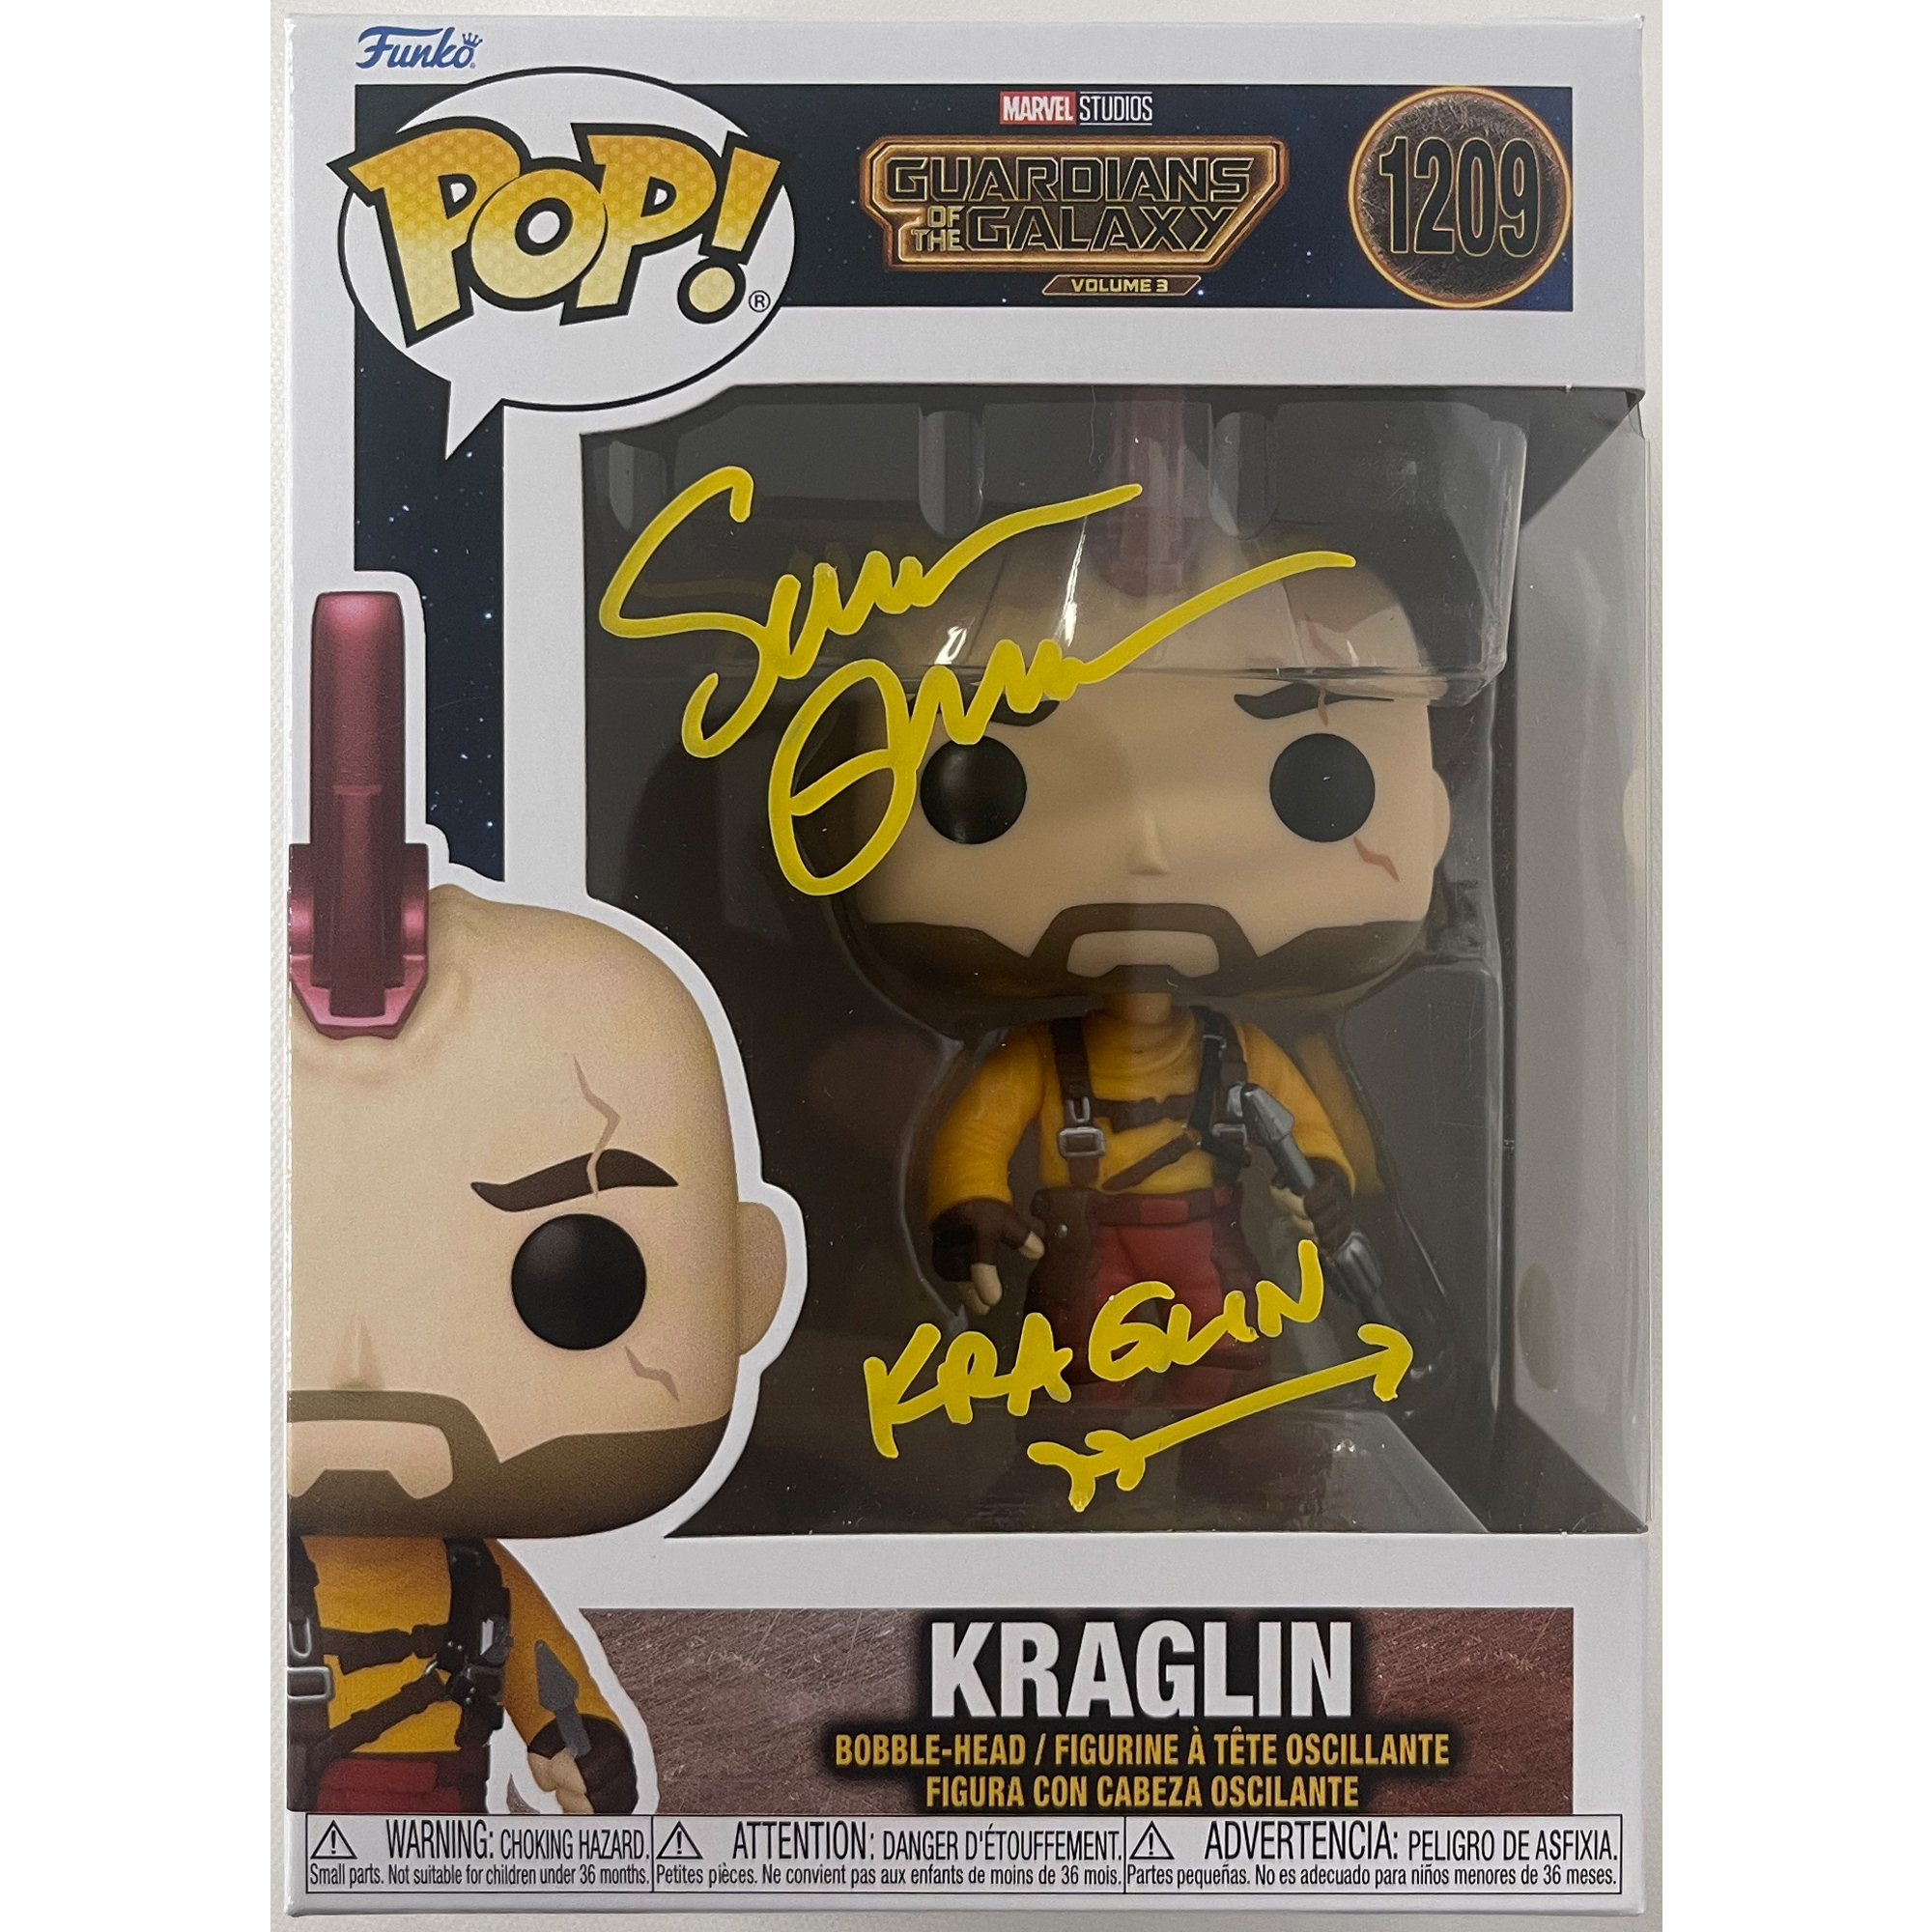 Sean Gunn Signed “Guardians of the Galaxy” Kraglin #1209 F...